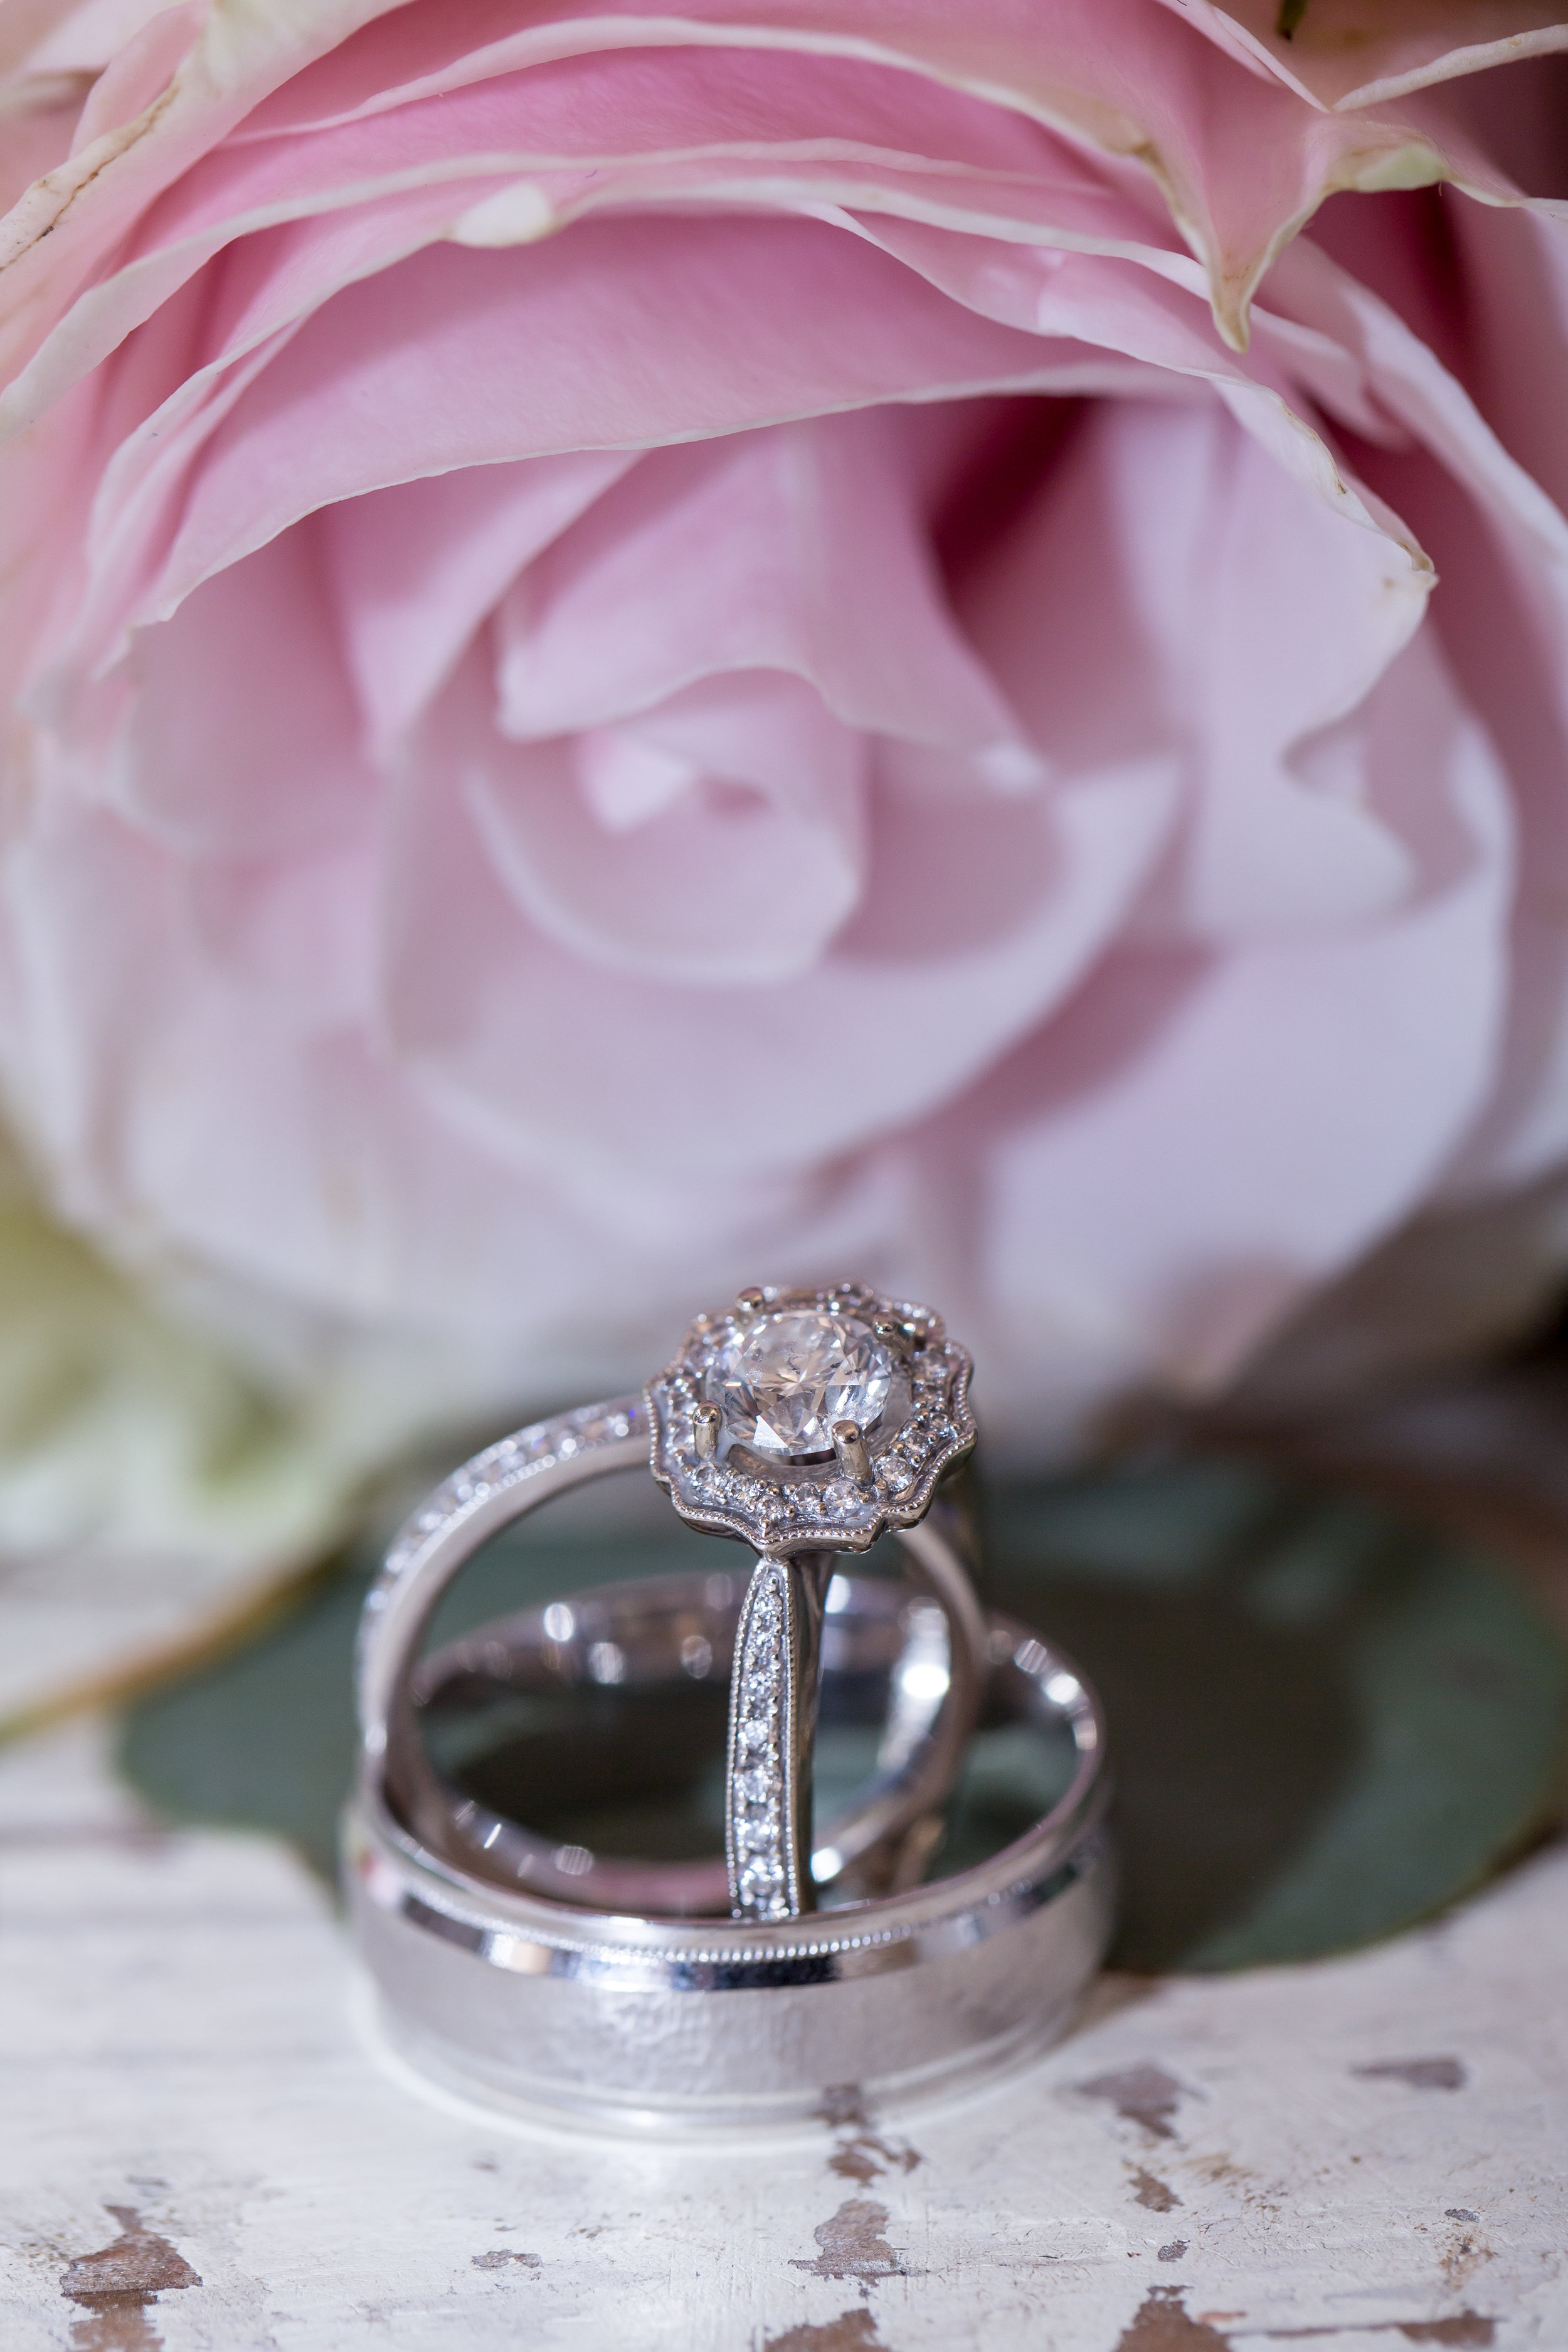 rings and flowers detail shot .JPG